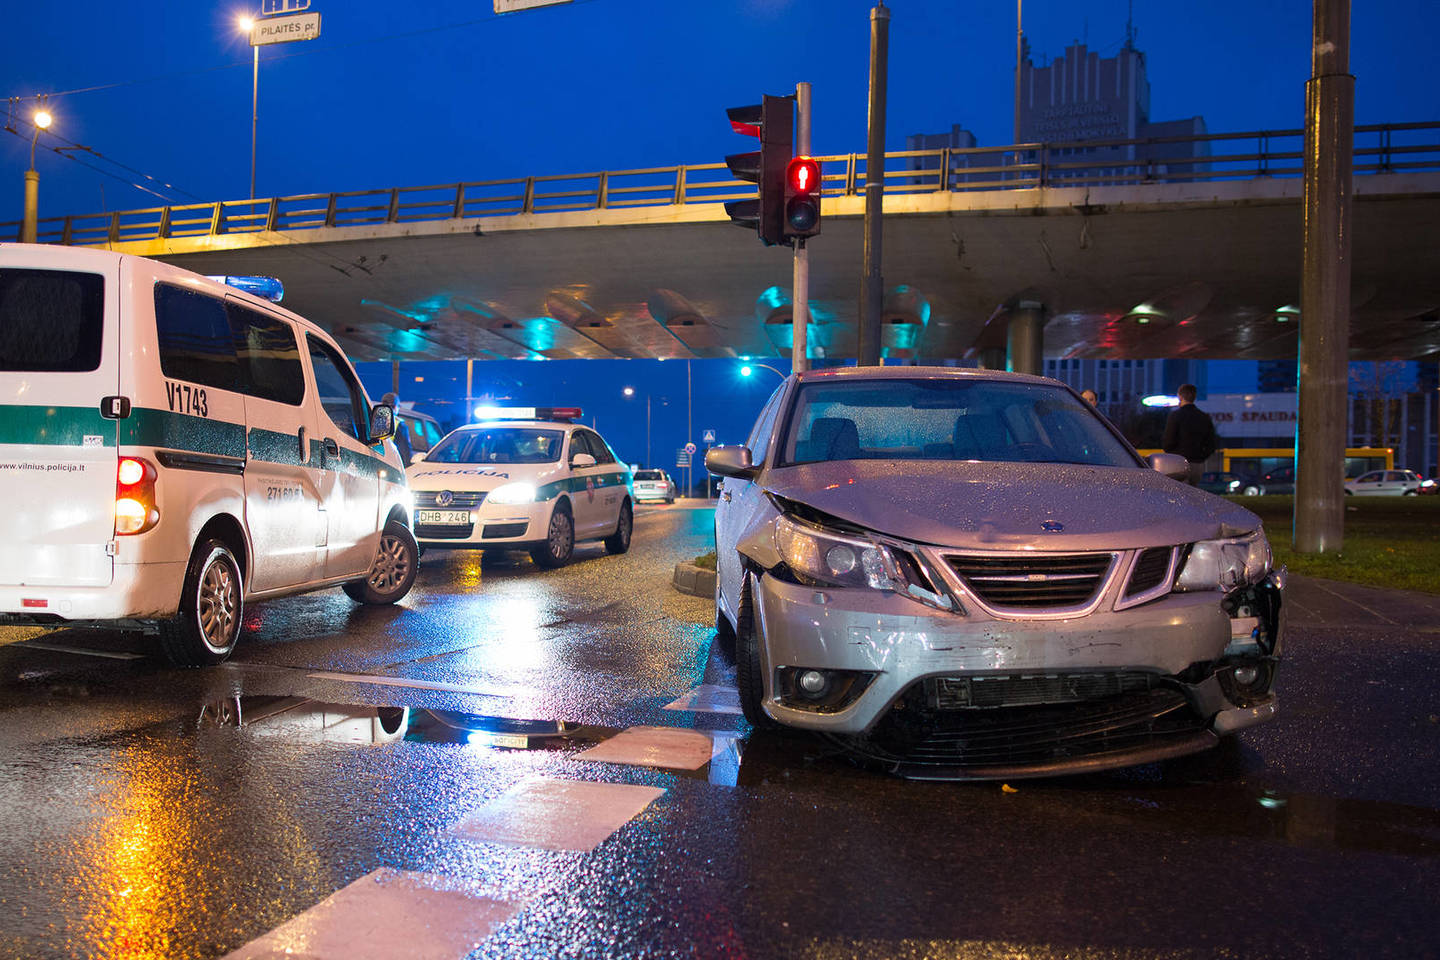 Ankstų pirmadienio rytą Vilniuje susidūrė du automobiliai, vienas jų taranavo du pėsčiuosius. Dėl avarijos Laisvės pr. ir T.Narbuto g. susidarė didžiulė transporto grūstis.<br>Lrytas.lt nuotr.